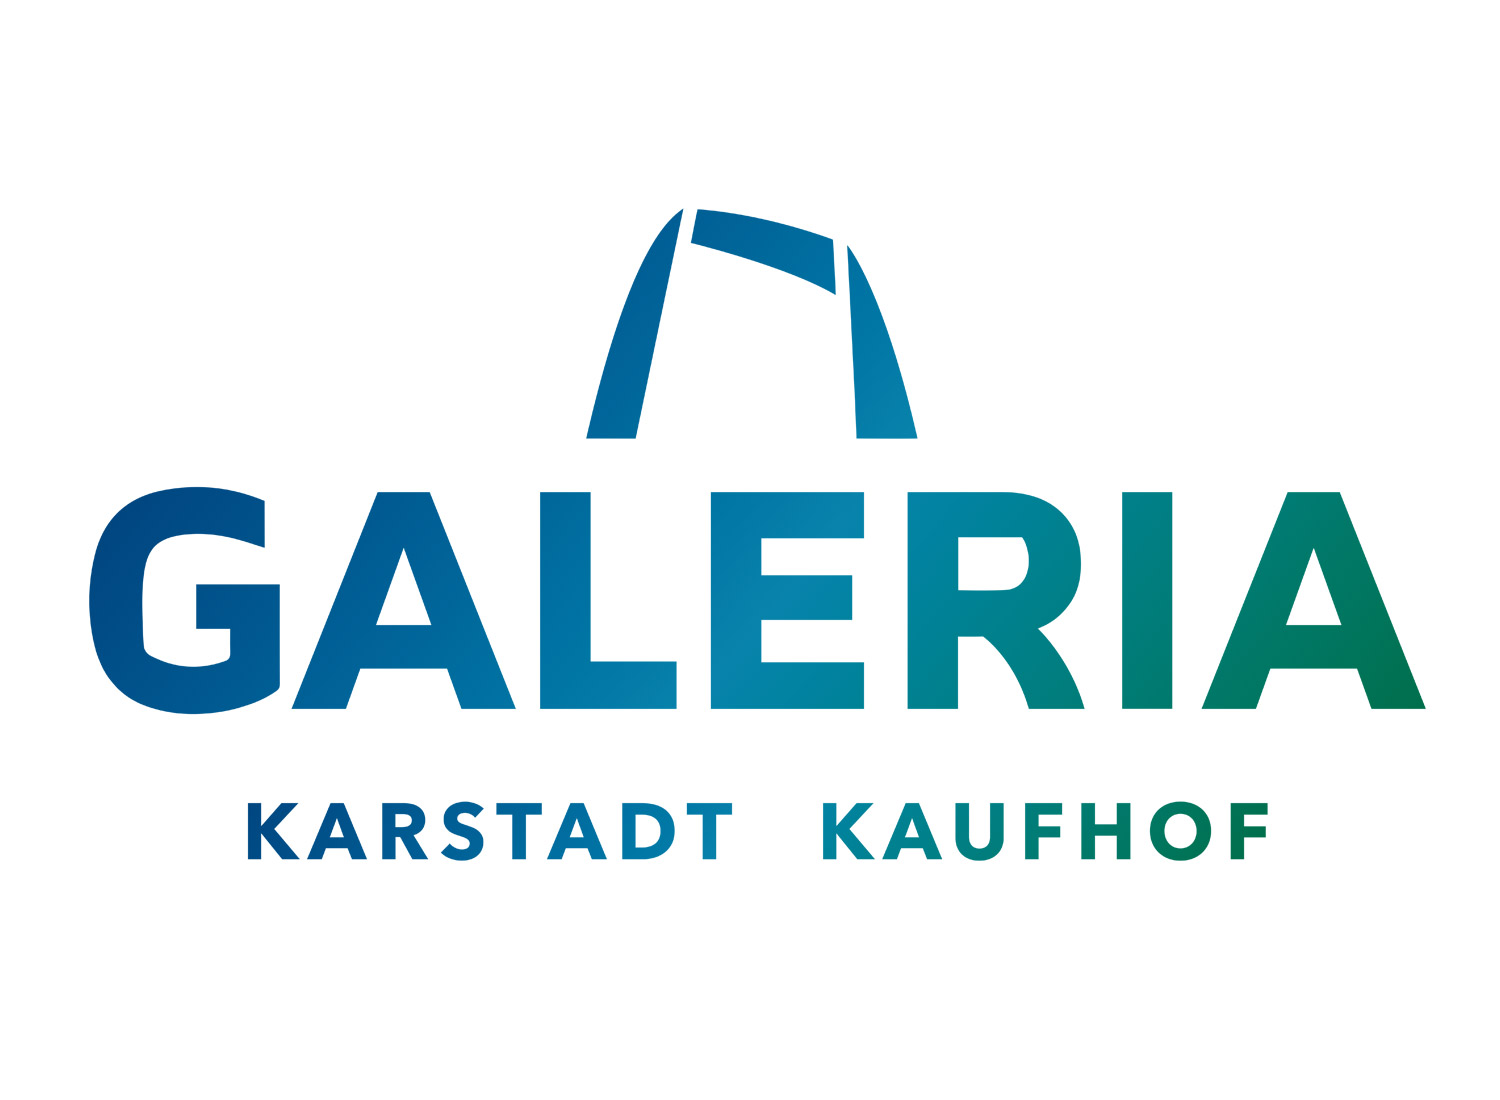 galeria-karstadt-kaufhof-logo-1.jpg